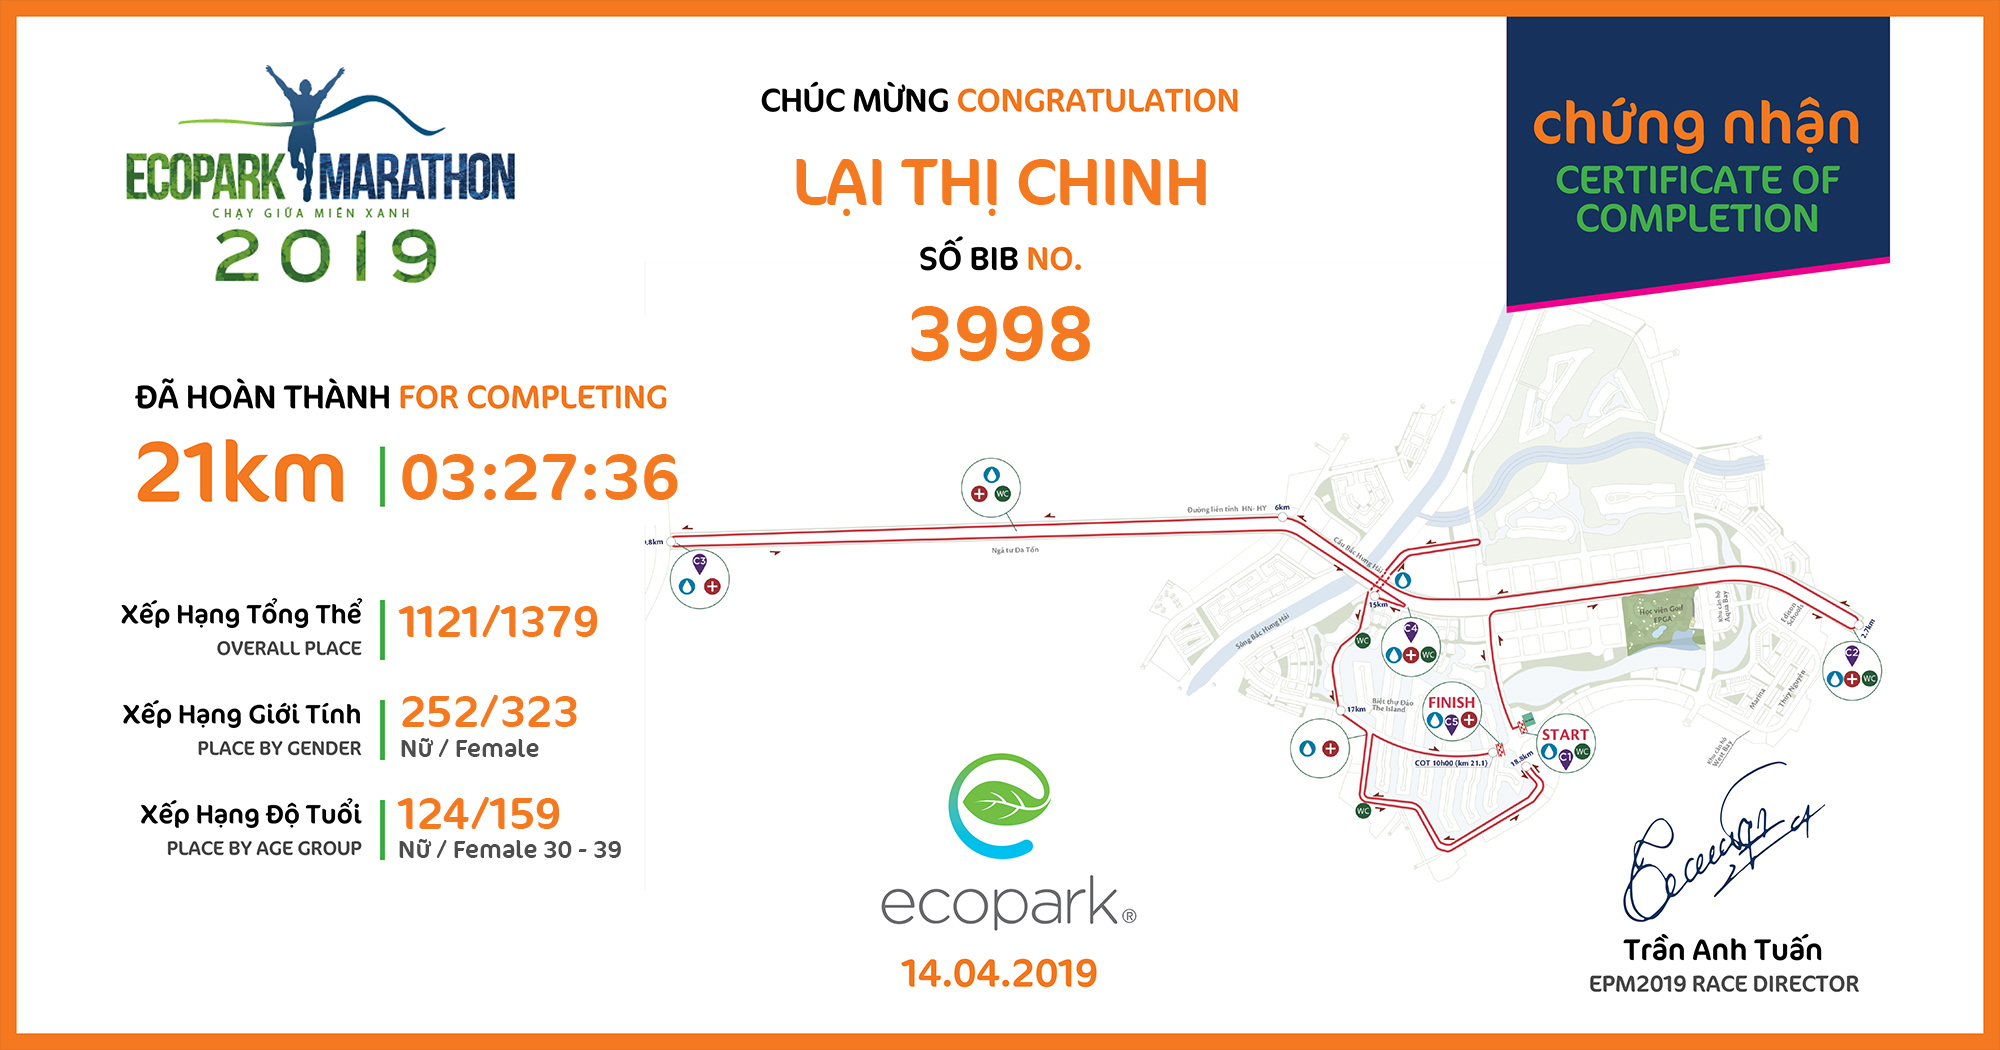 3998 - Lại Thị Chinh